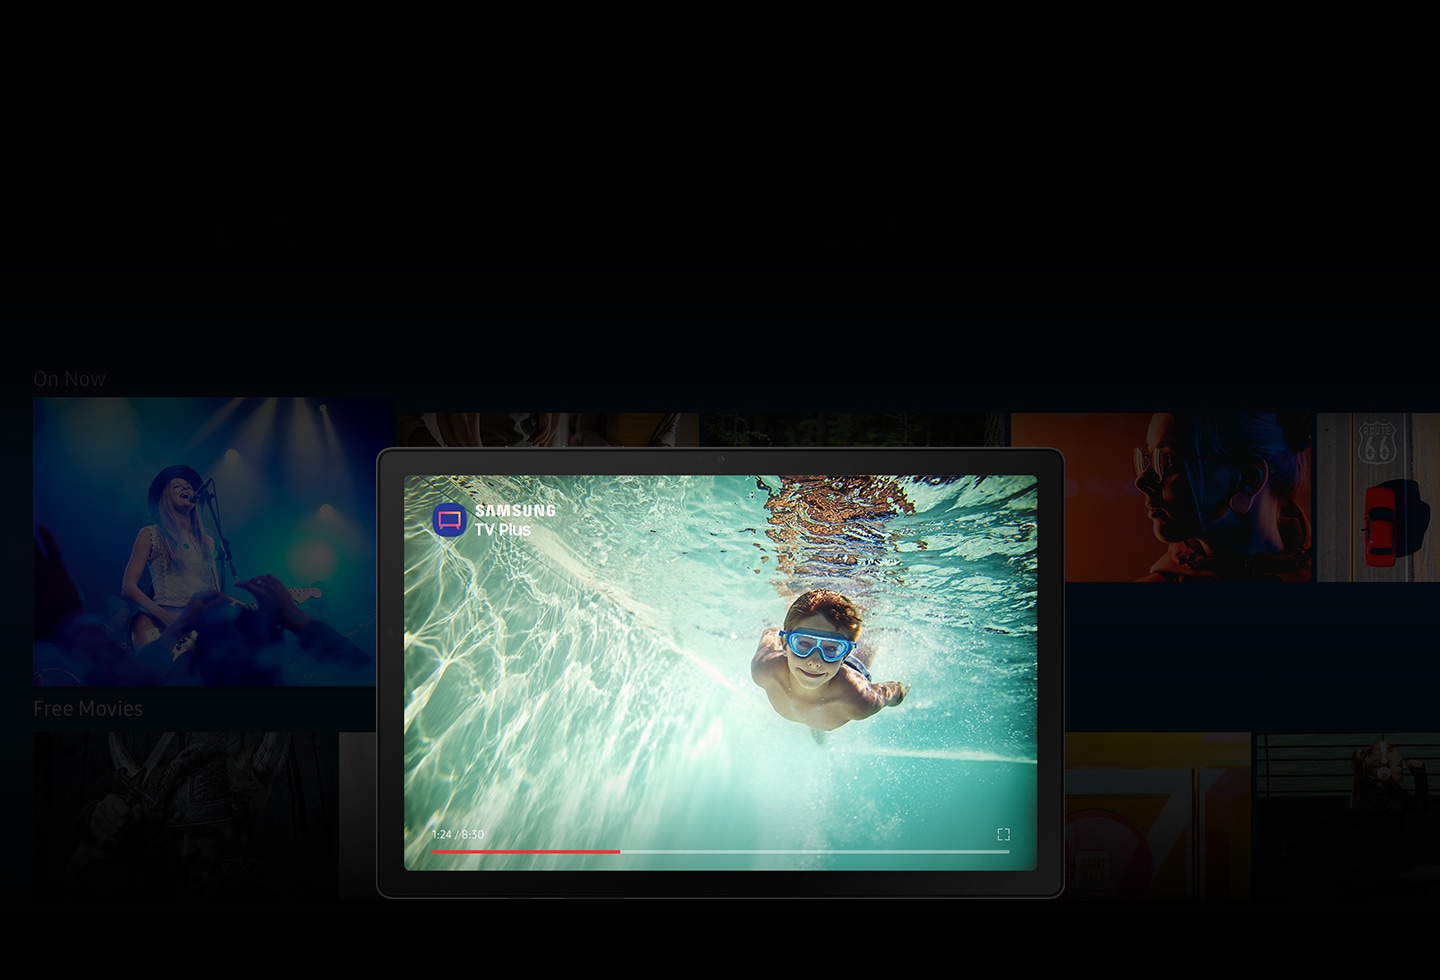 Samsung TV Plus aplikacija je otvorena na Galaxy Tab A8. Uz mnogo zamućenih slika iz TV emisija i filmova u pozadini, ekran prikazuje dječaka koji pliva pod vodom sa ikonicom aplikacije i Samsung TV Plus logotipom.